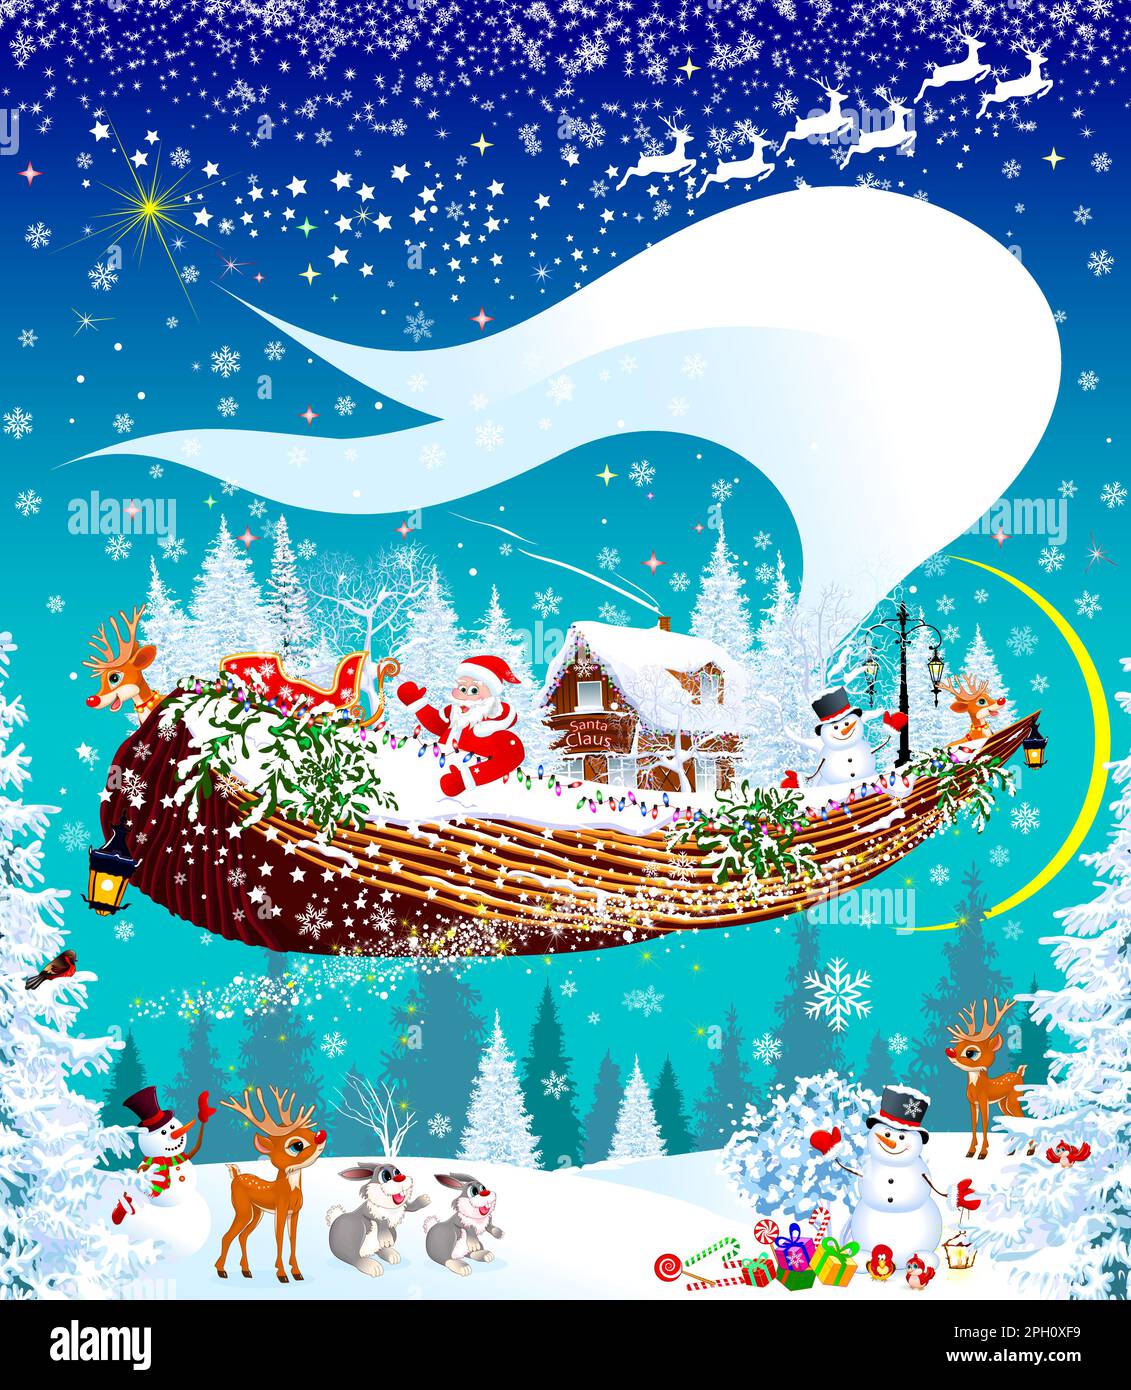 Le Père Noël, un renne et un bonhomme de neige volent dans le ciel sur un bateau volant, contre une forêt enneigée d'hiver. Nuit de Noël. Les animaux de la forêt se réjouissent Illustration de Vecteur